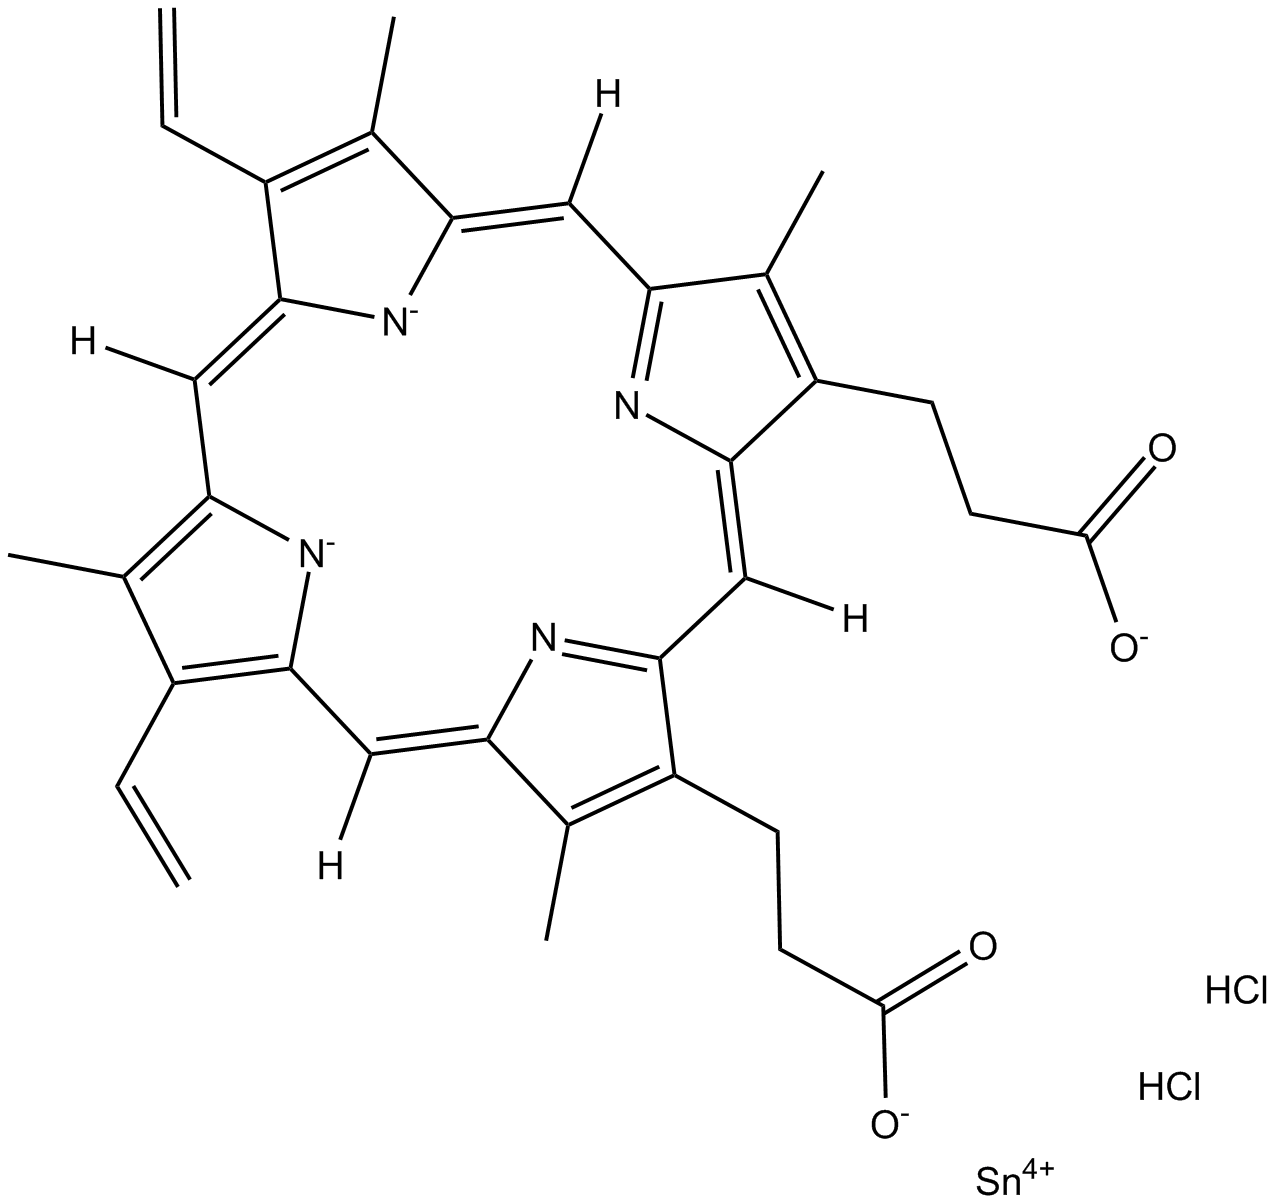 Tin protoporphyrin IX dichloride